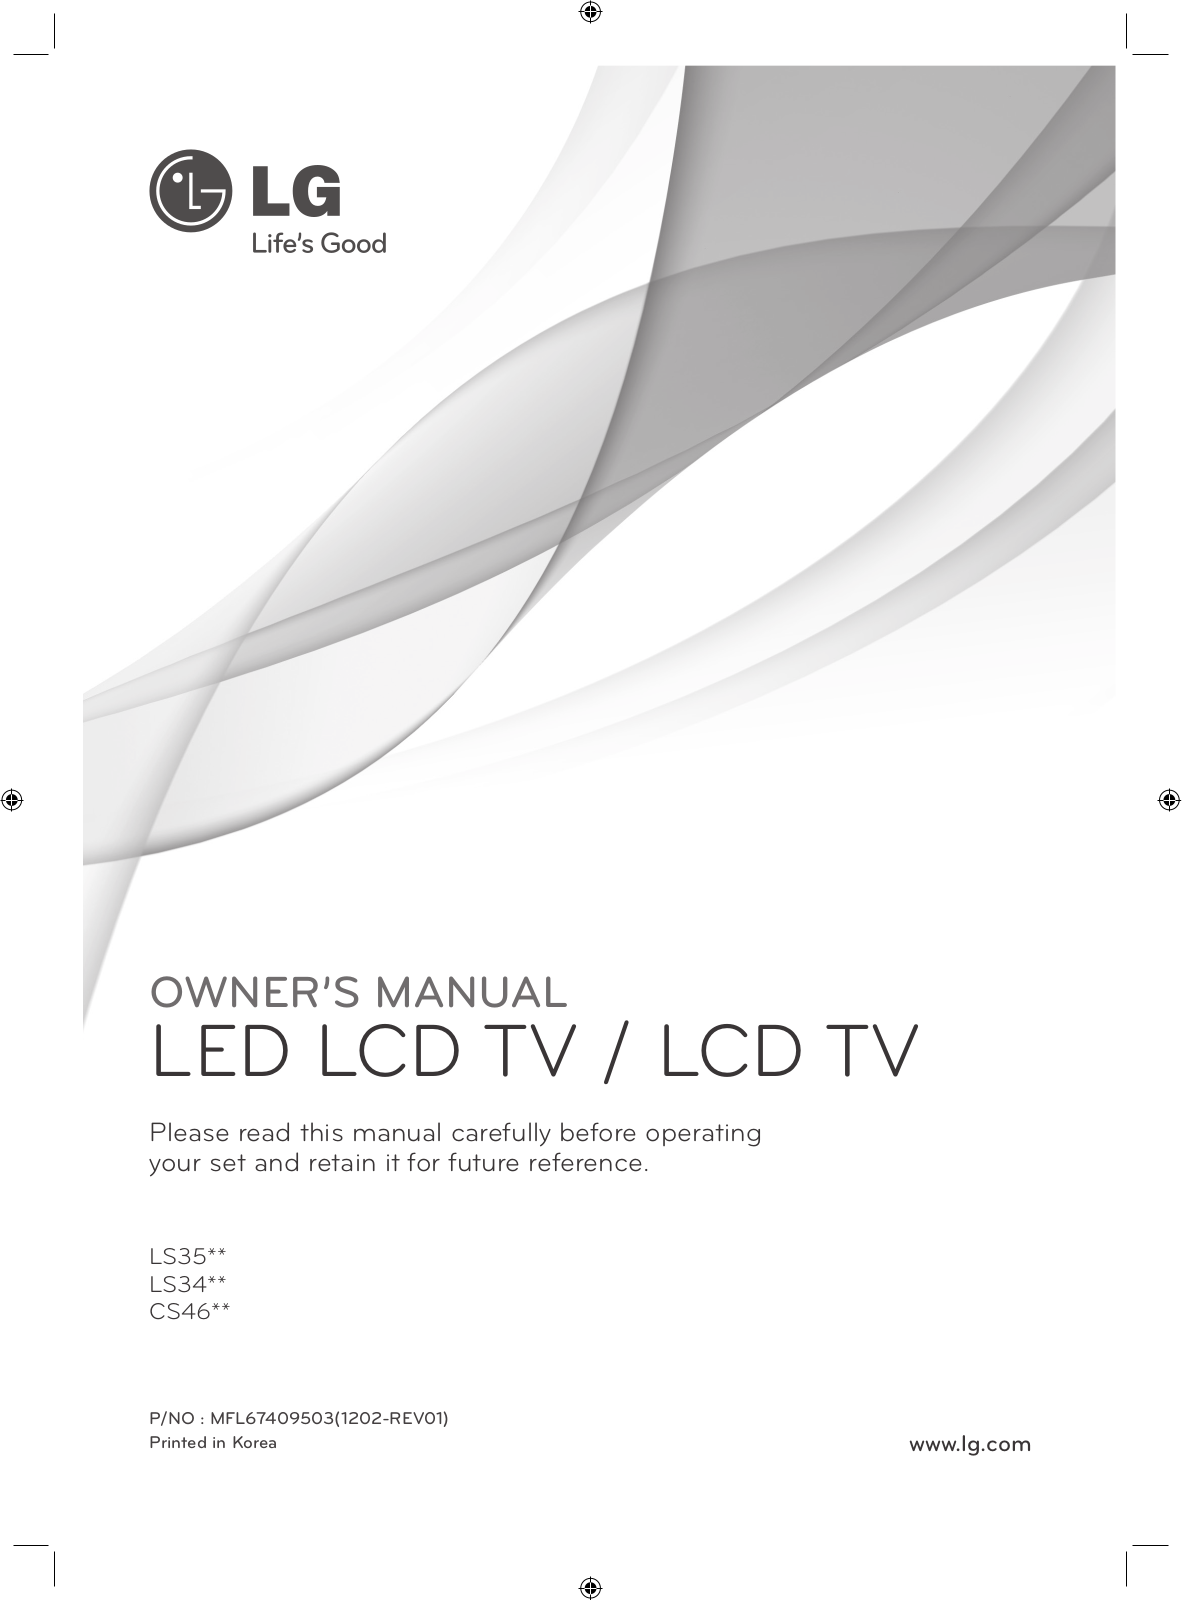 Lg LS35, LS34, CS46 User Manual